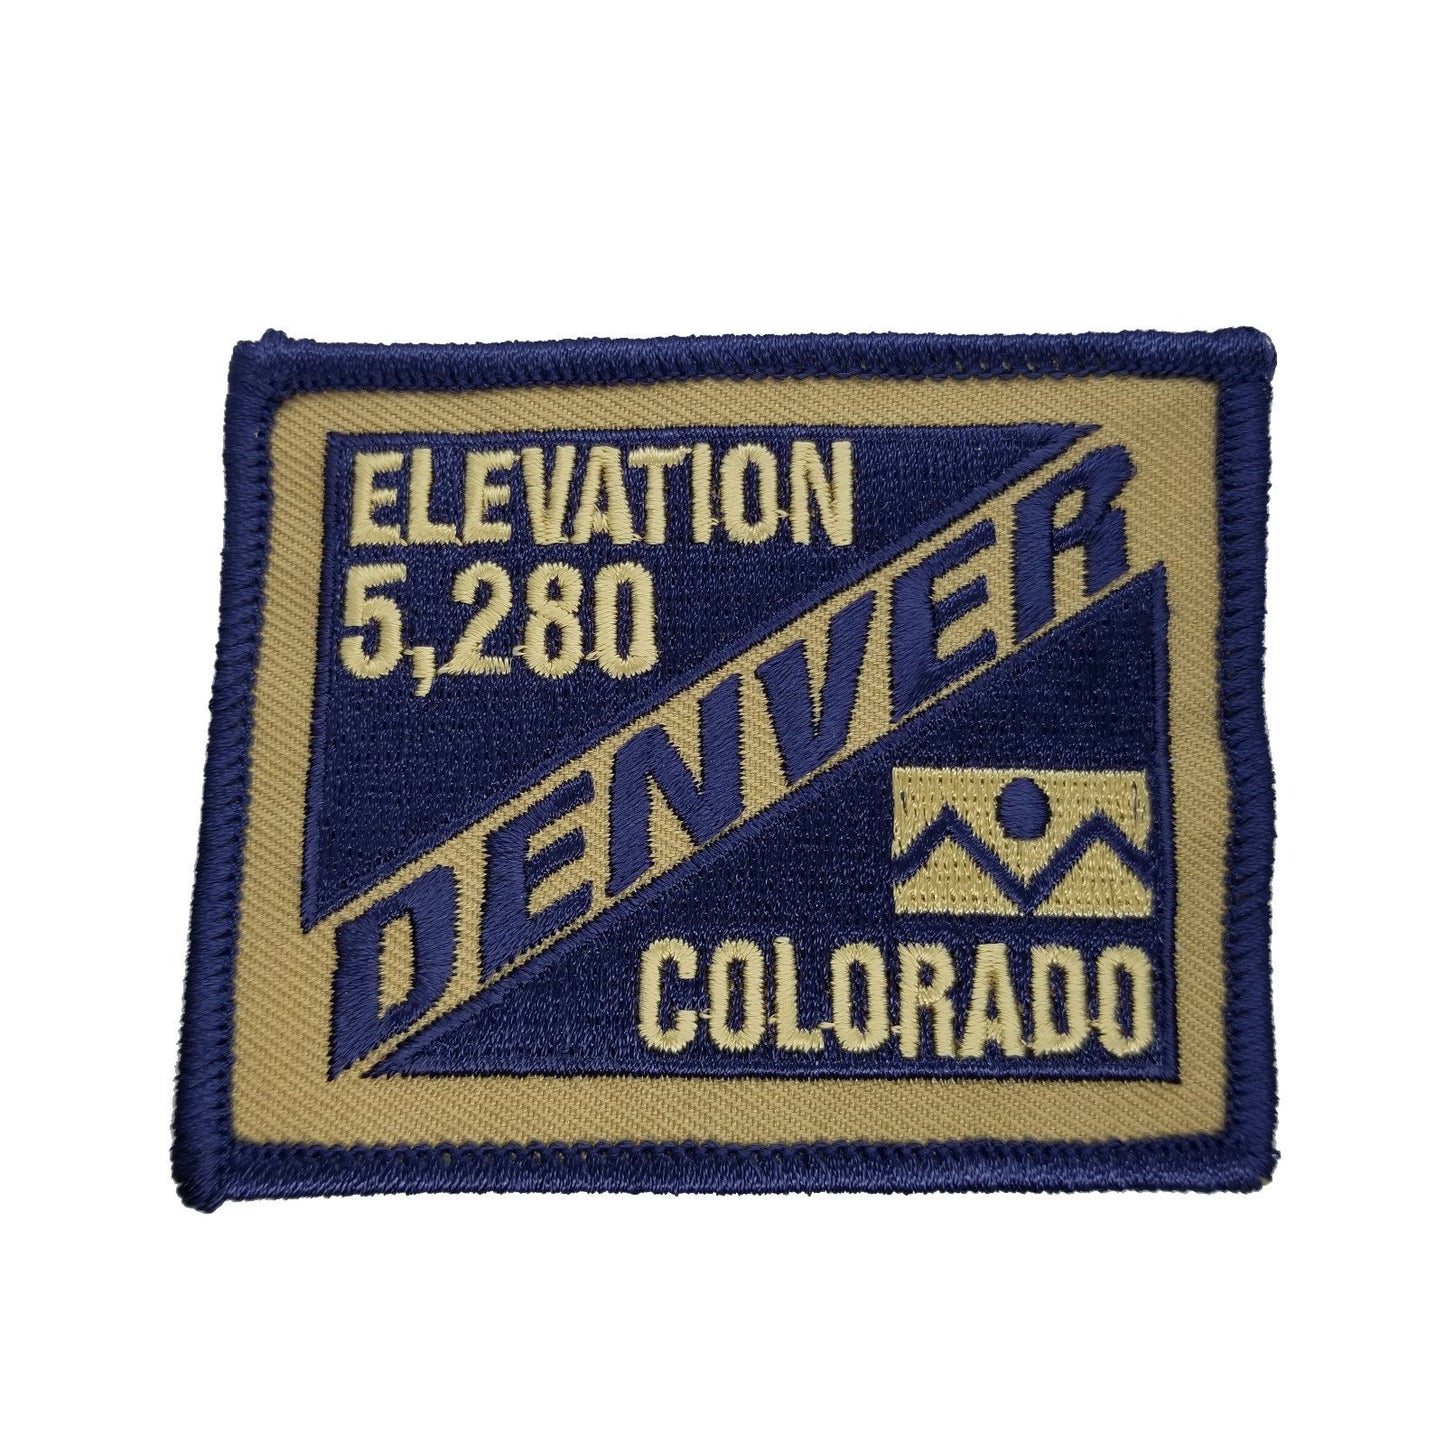 Denver Colorado Patch – CO Patch – Elevation 5,280 Colorado Souvenir – Travel Patch – Iron On – Applique Ski Resort Ski Patch